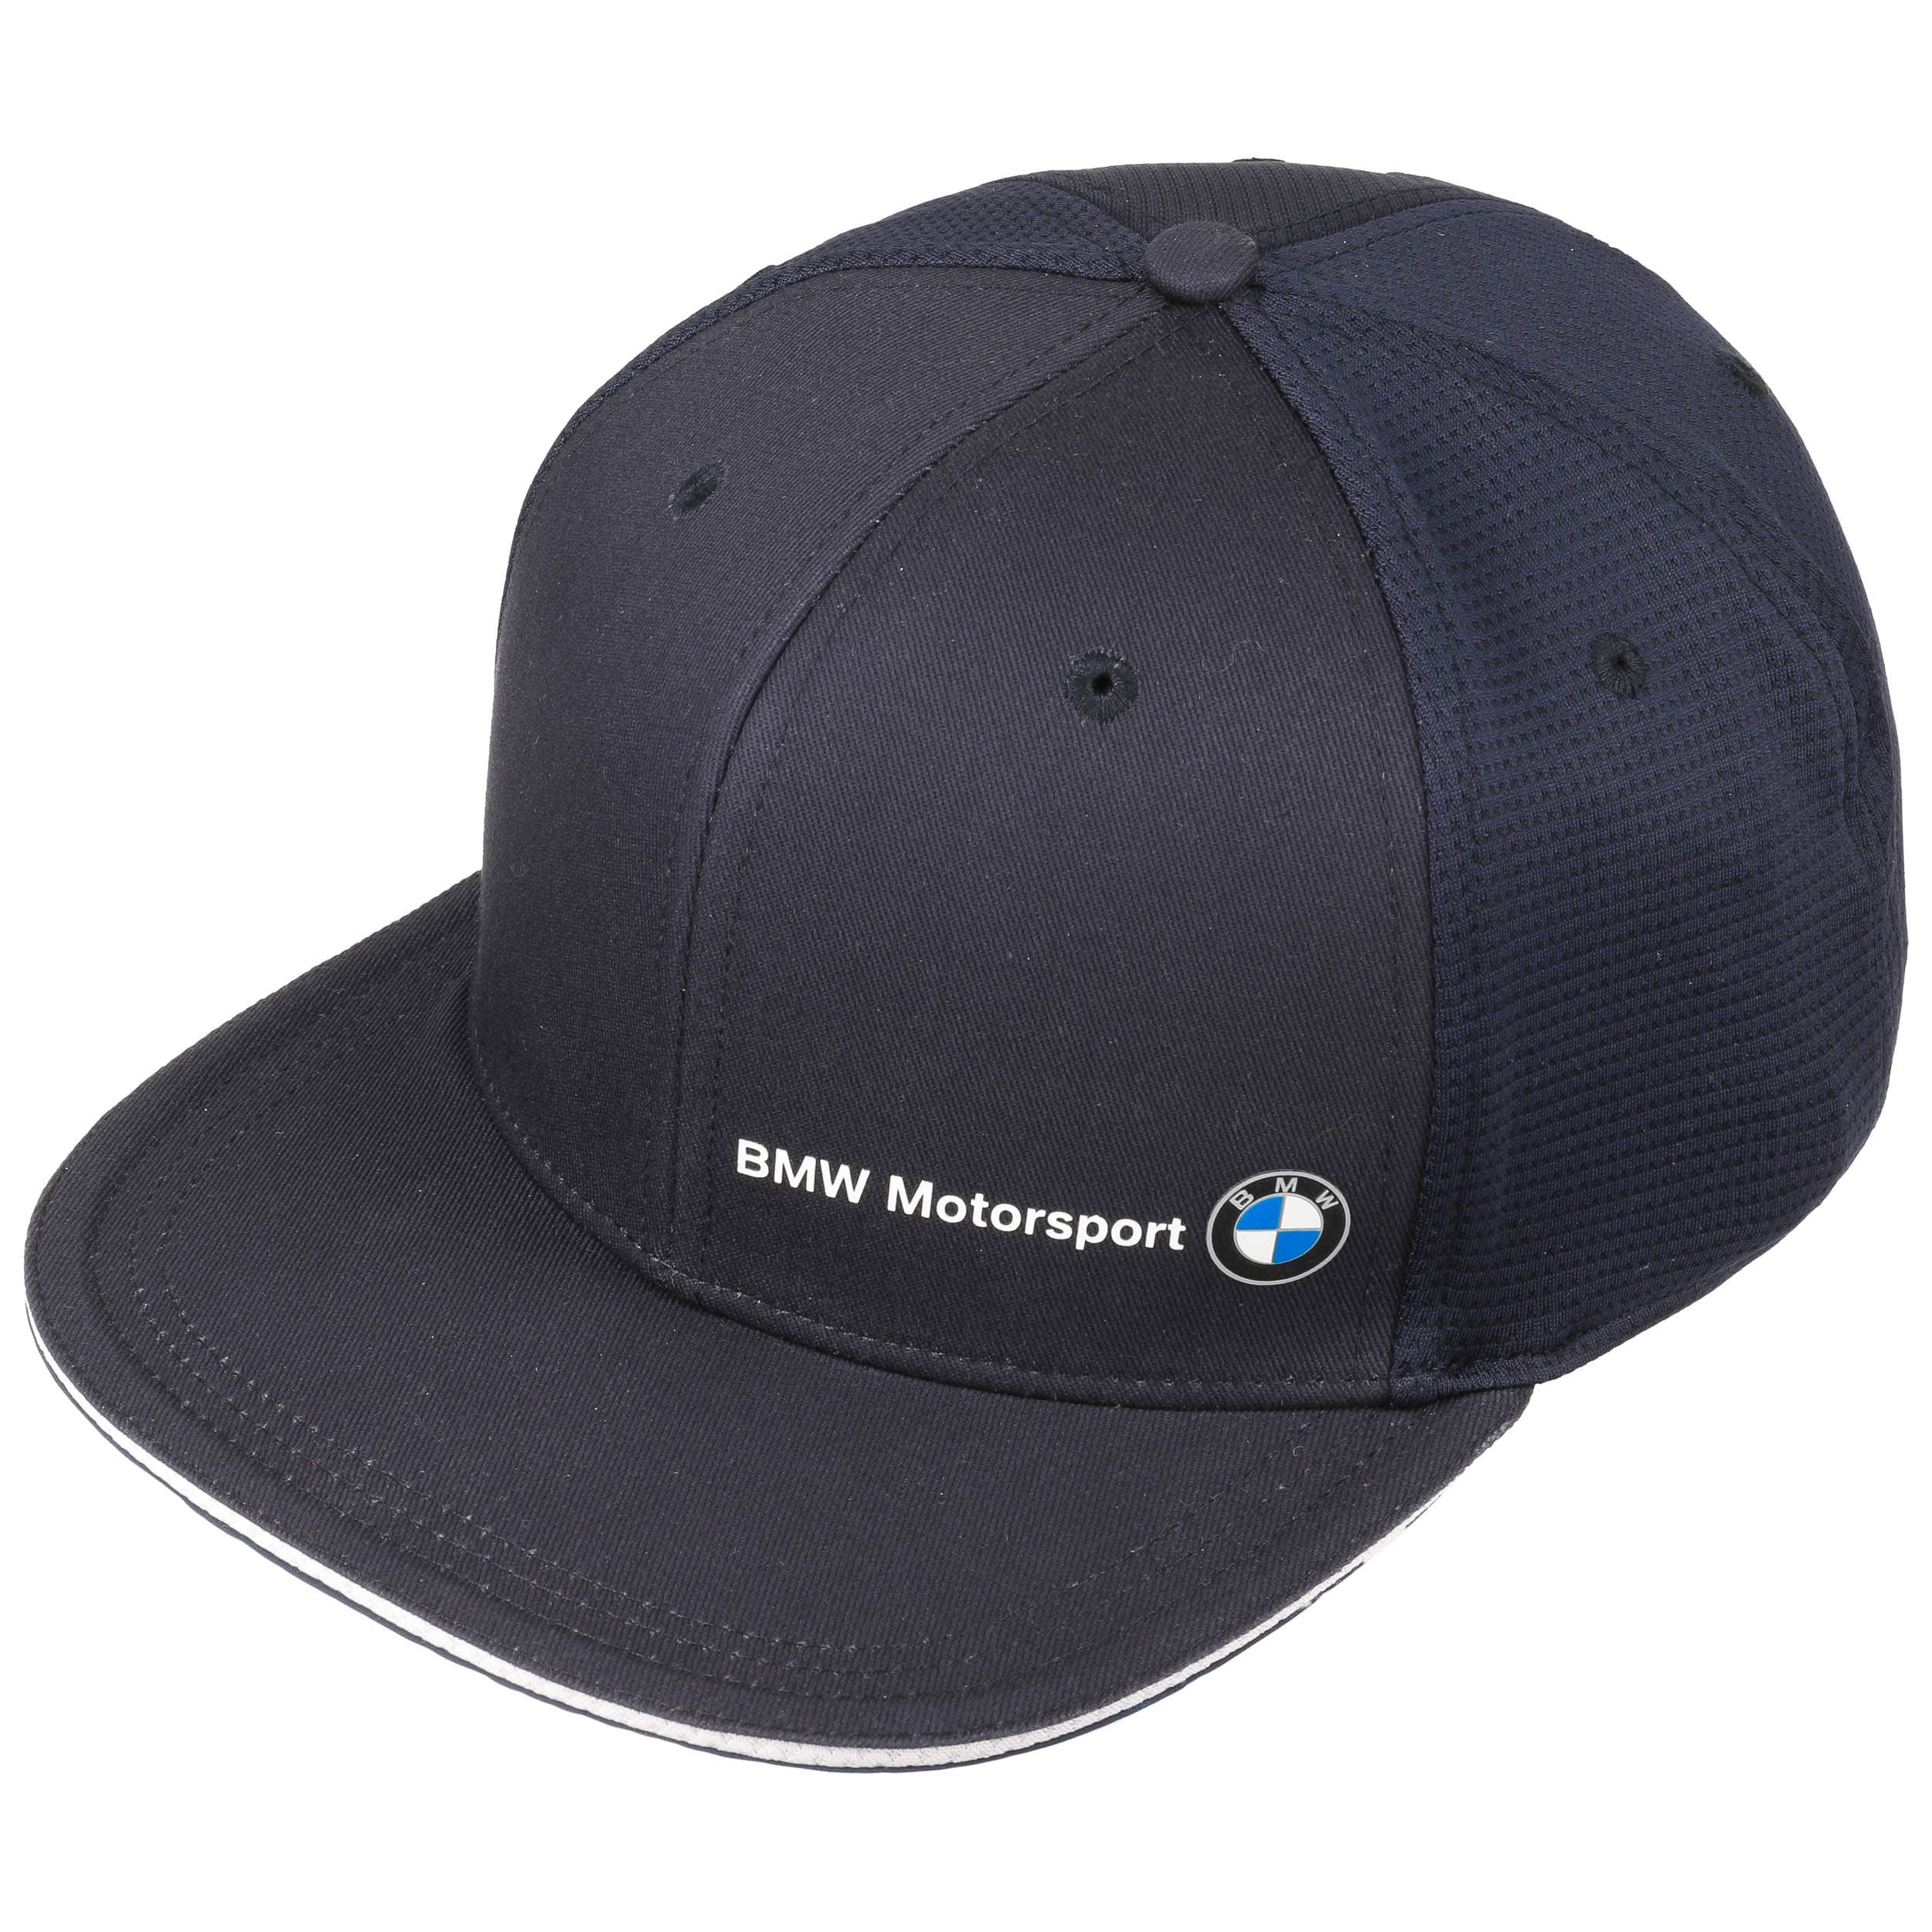 BMW Motorsport Flat Brim Cap by PUMA - 29,95 €